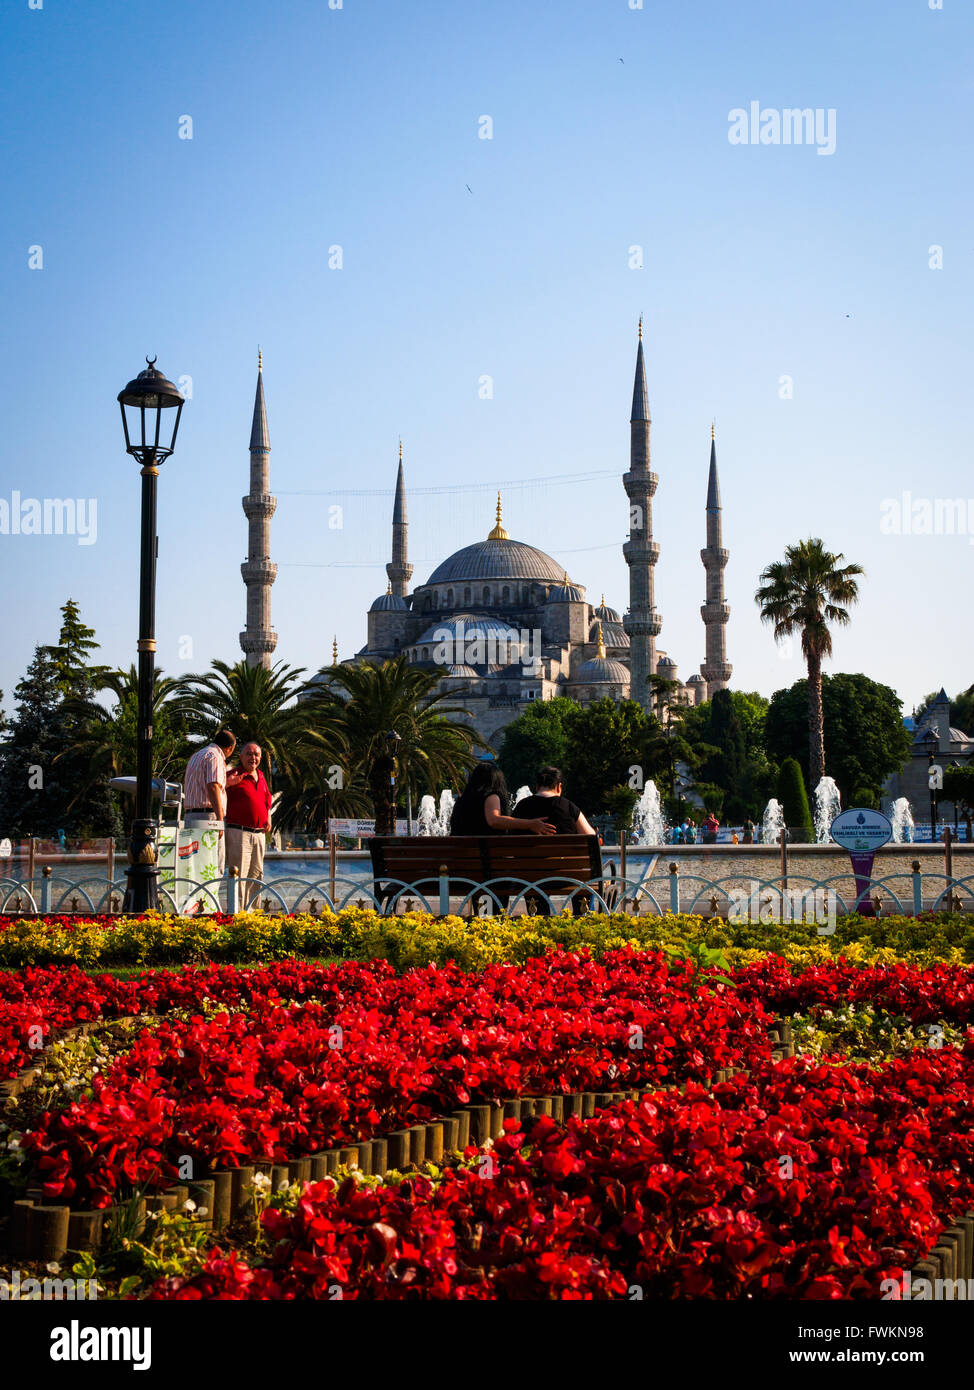 Vue sur jardin de fleurs rouges et jaunes dans Sultanahmet Park à célèbre Mosquée bleue (mosquée Sultan Ahmed) à Istanbul, Turquie Banque D'Images